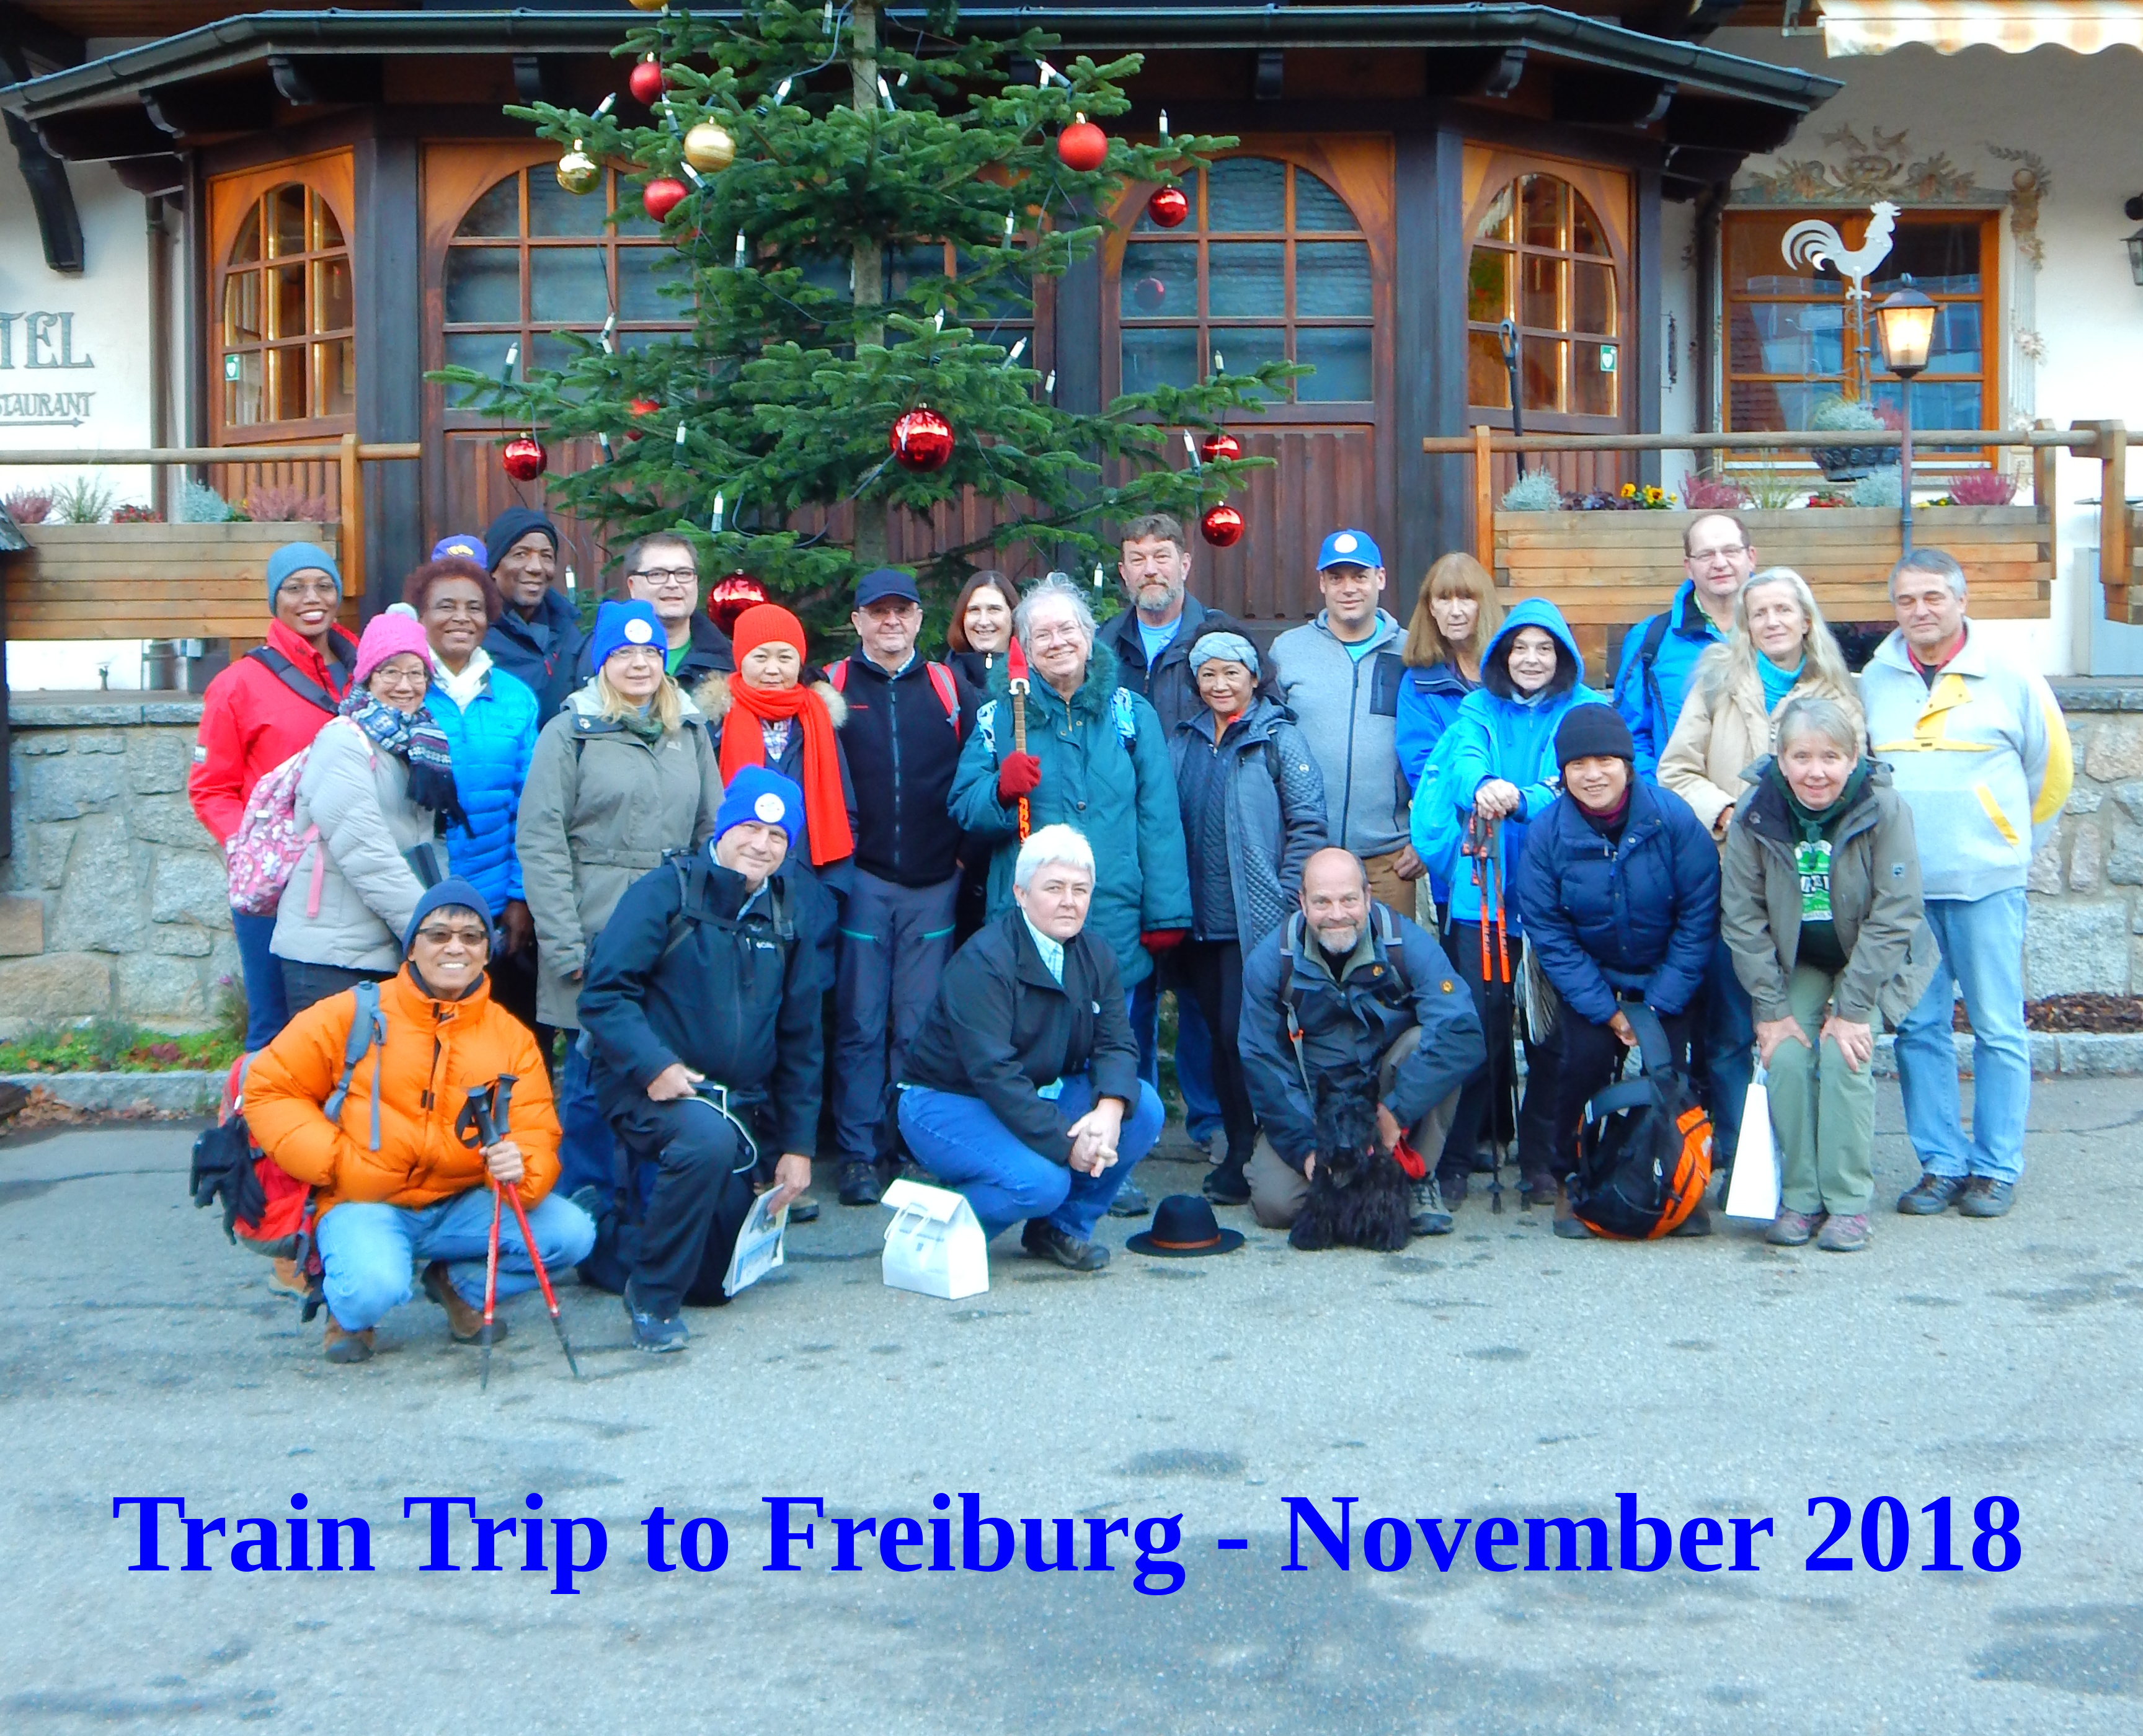 Train Trip to Freiburg November 2018